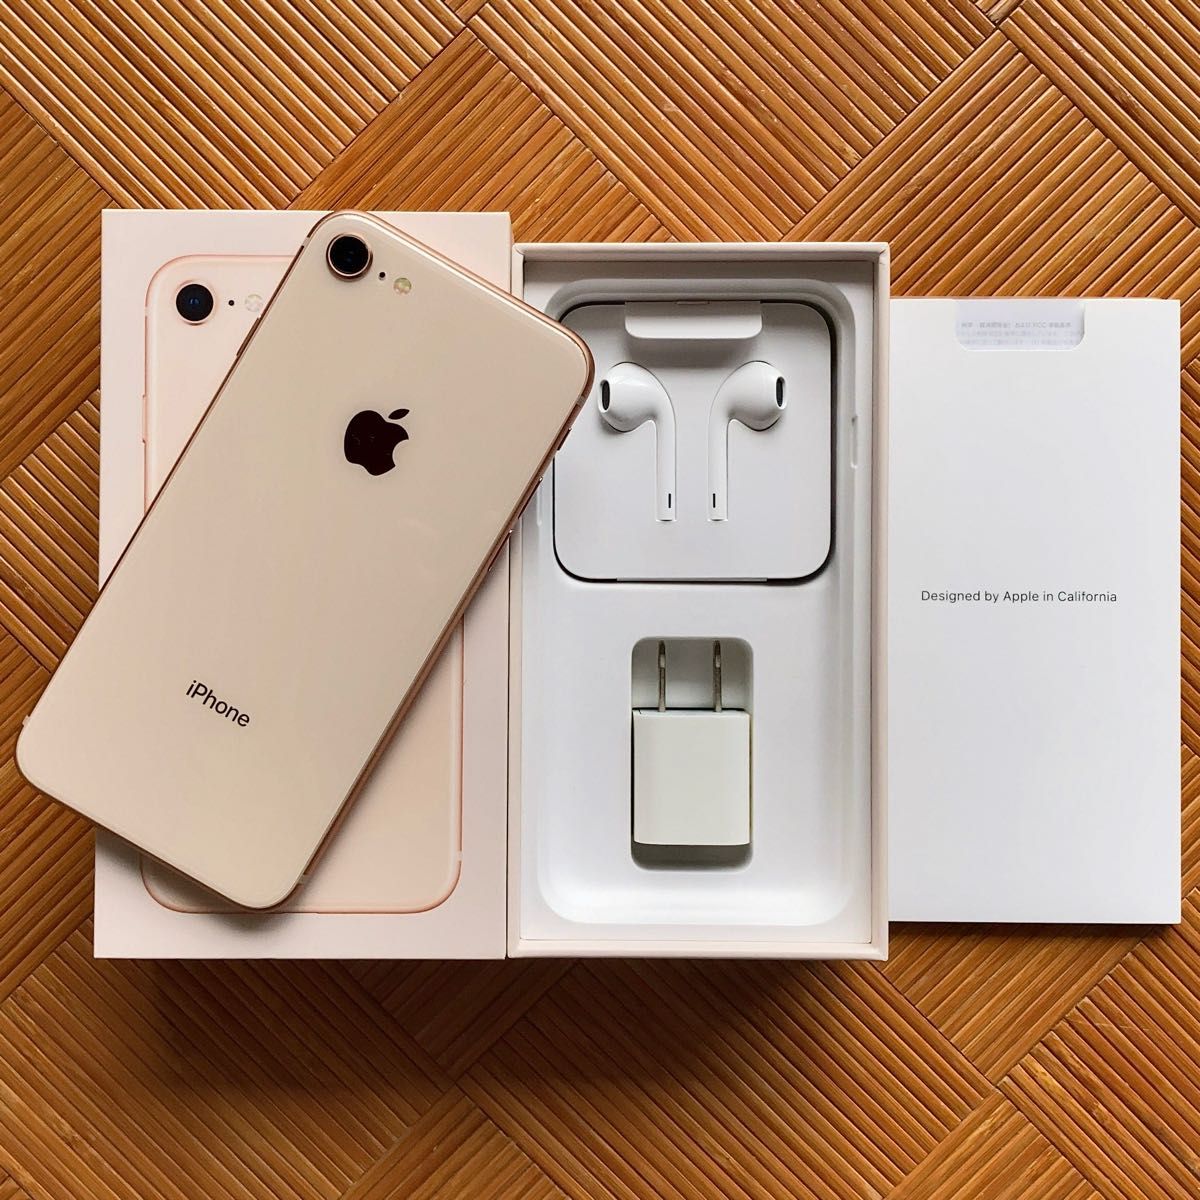 美品 バッテリー96% Apple iPhone 8 64GB Gold SIMフリー スマホ